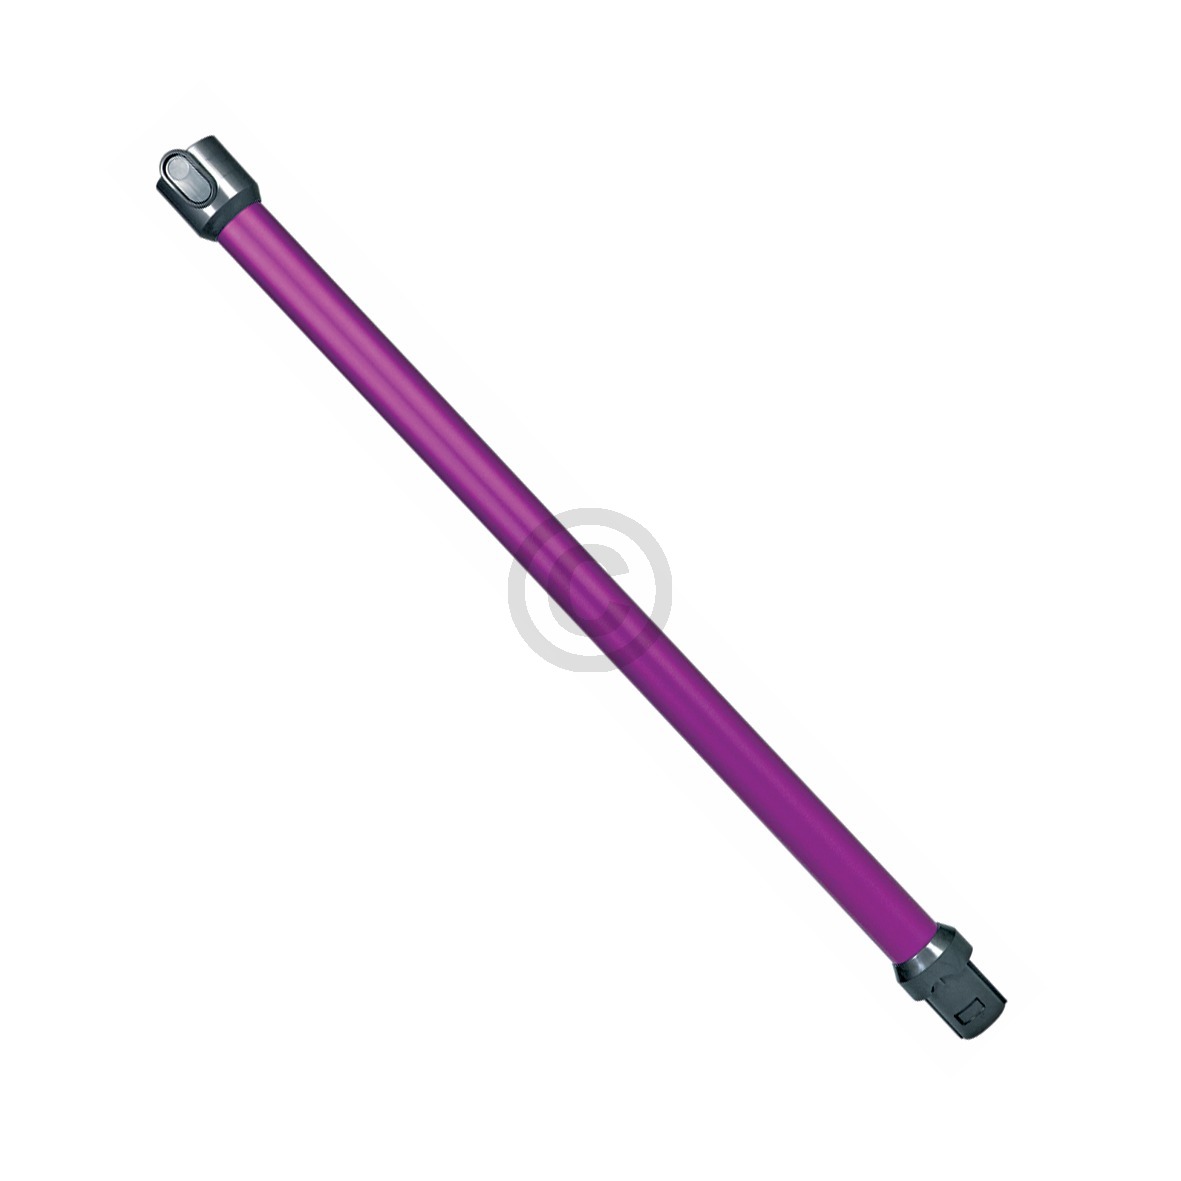 Verlängerungsrohr dyson 965663-03 pink schwarz mit Elektroanschluss für Staubsauger